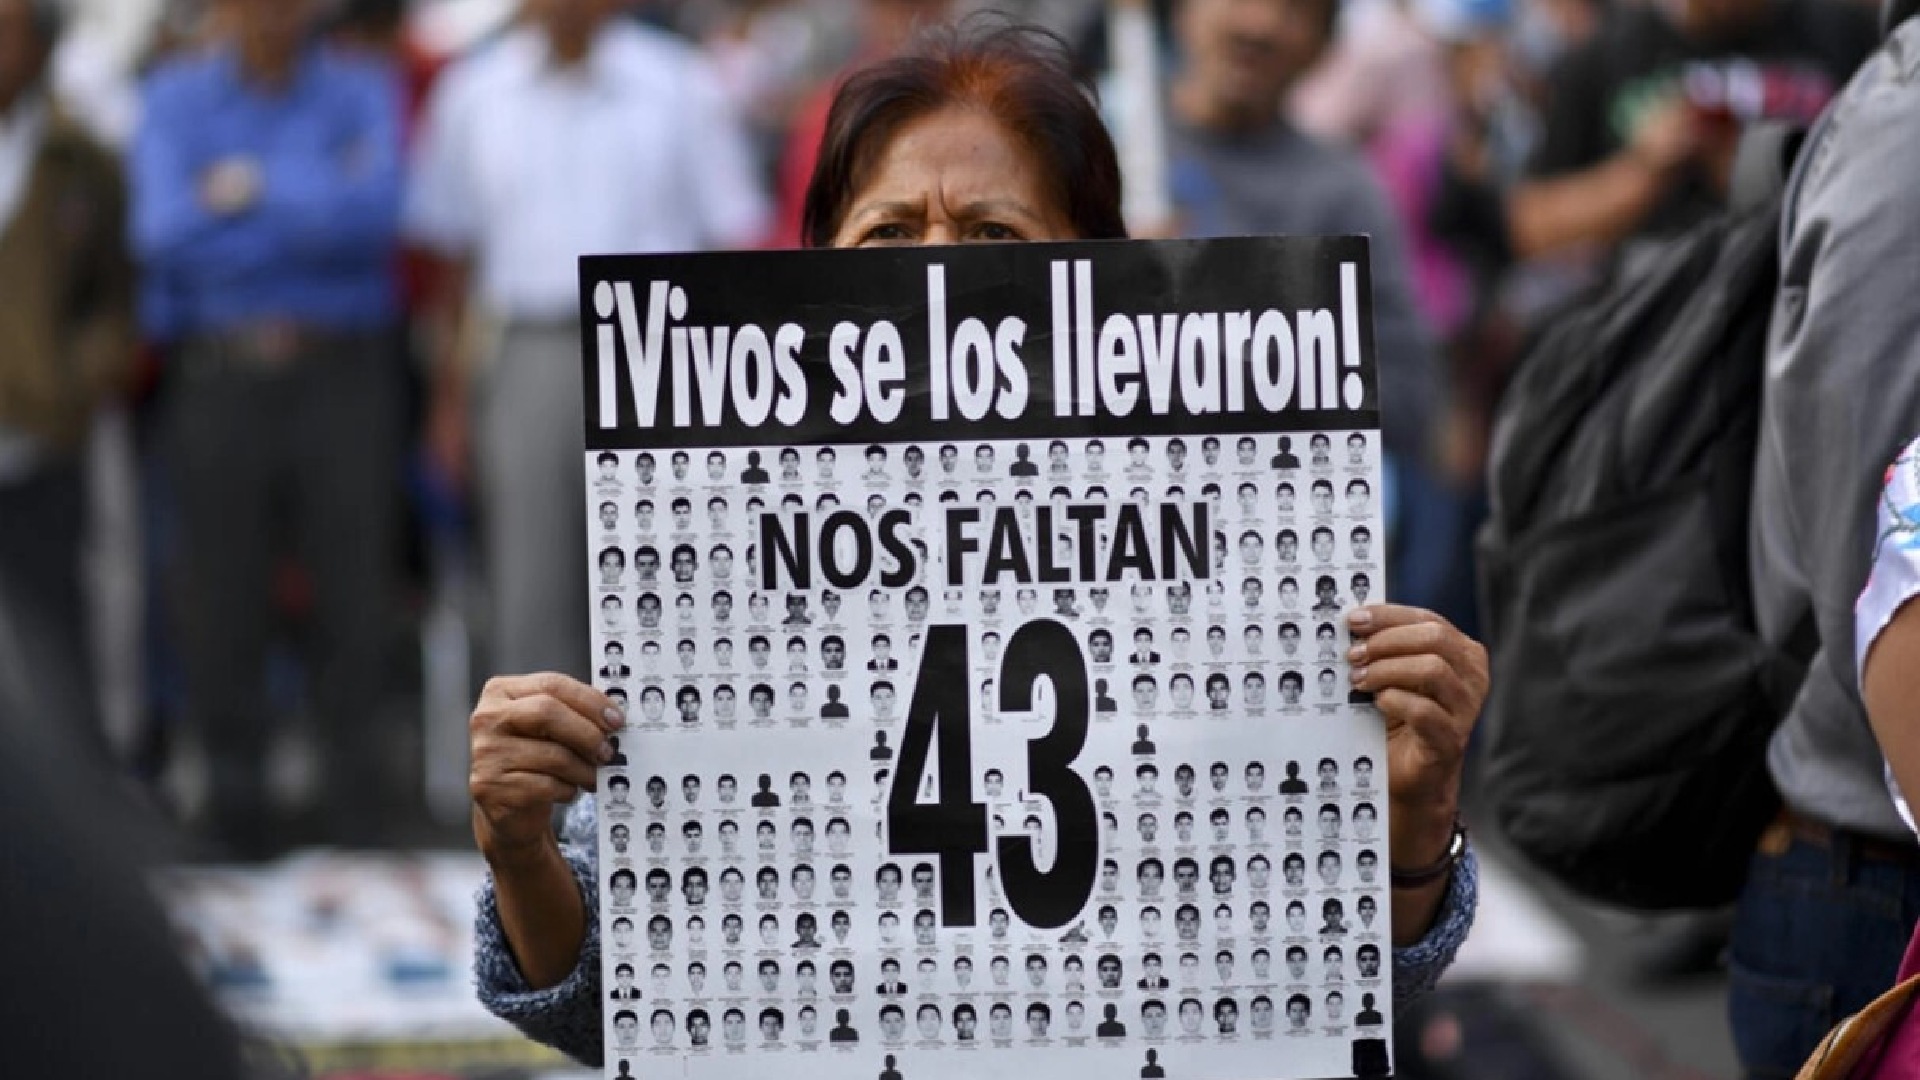 El GIEI identificó inconsistencias en la llamada "Verdad histórica" sobre el Caso Ayotzinapa  (Foto: AFP)